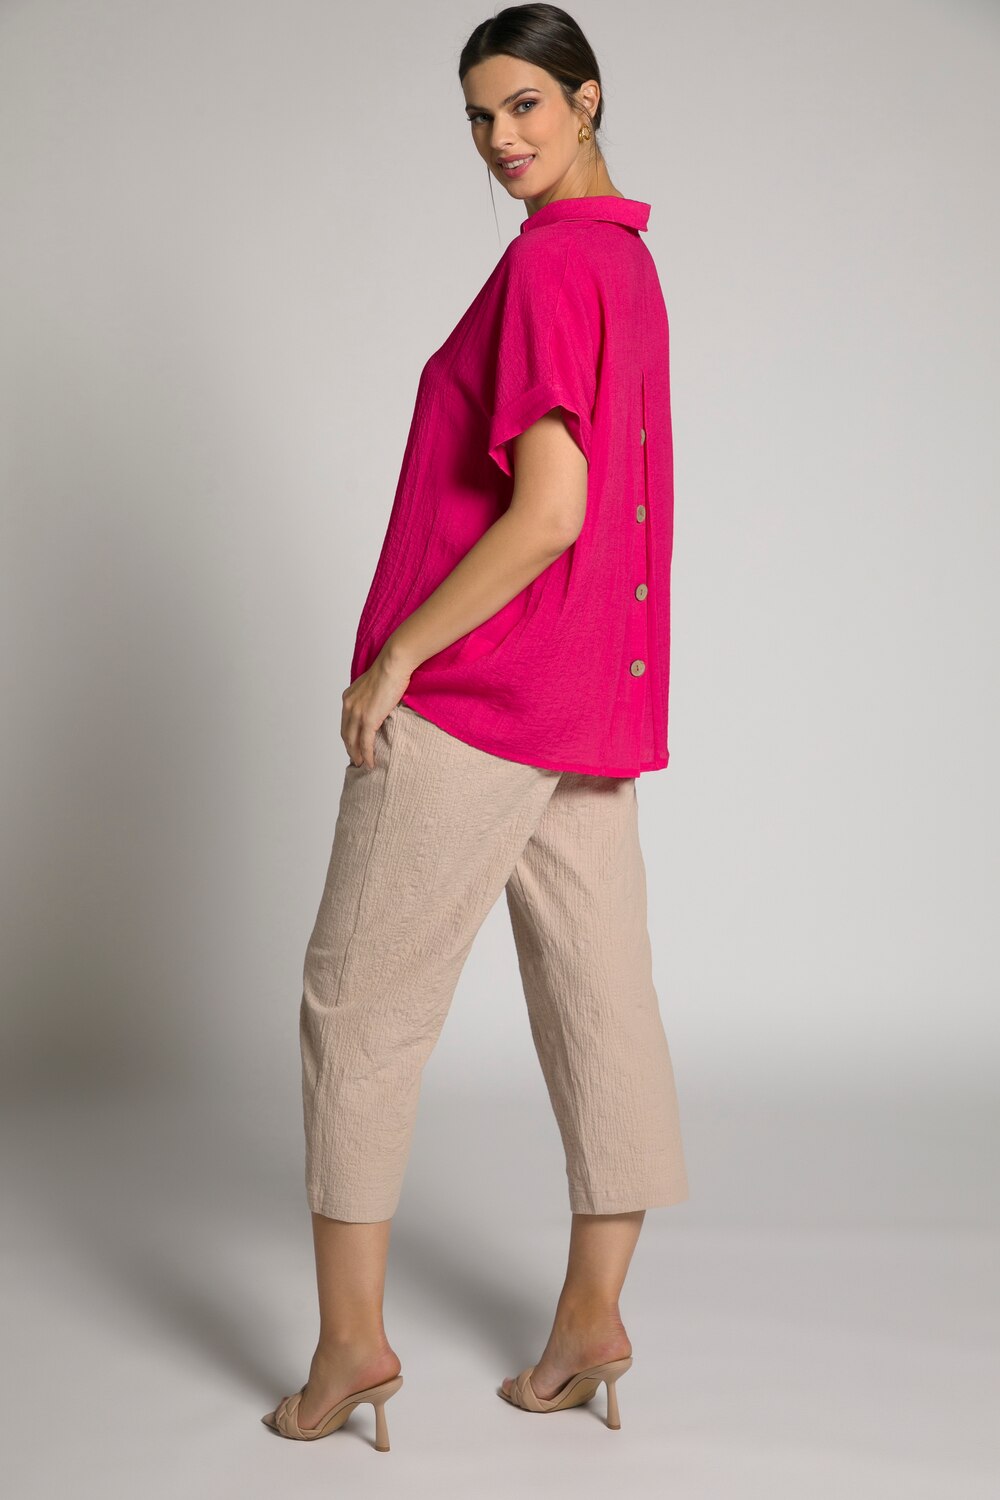 Grote Maten blouse, Dames, roze, Maat: 50/52, Viscose/Synthetische vezels, Ulla Popken